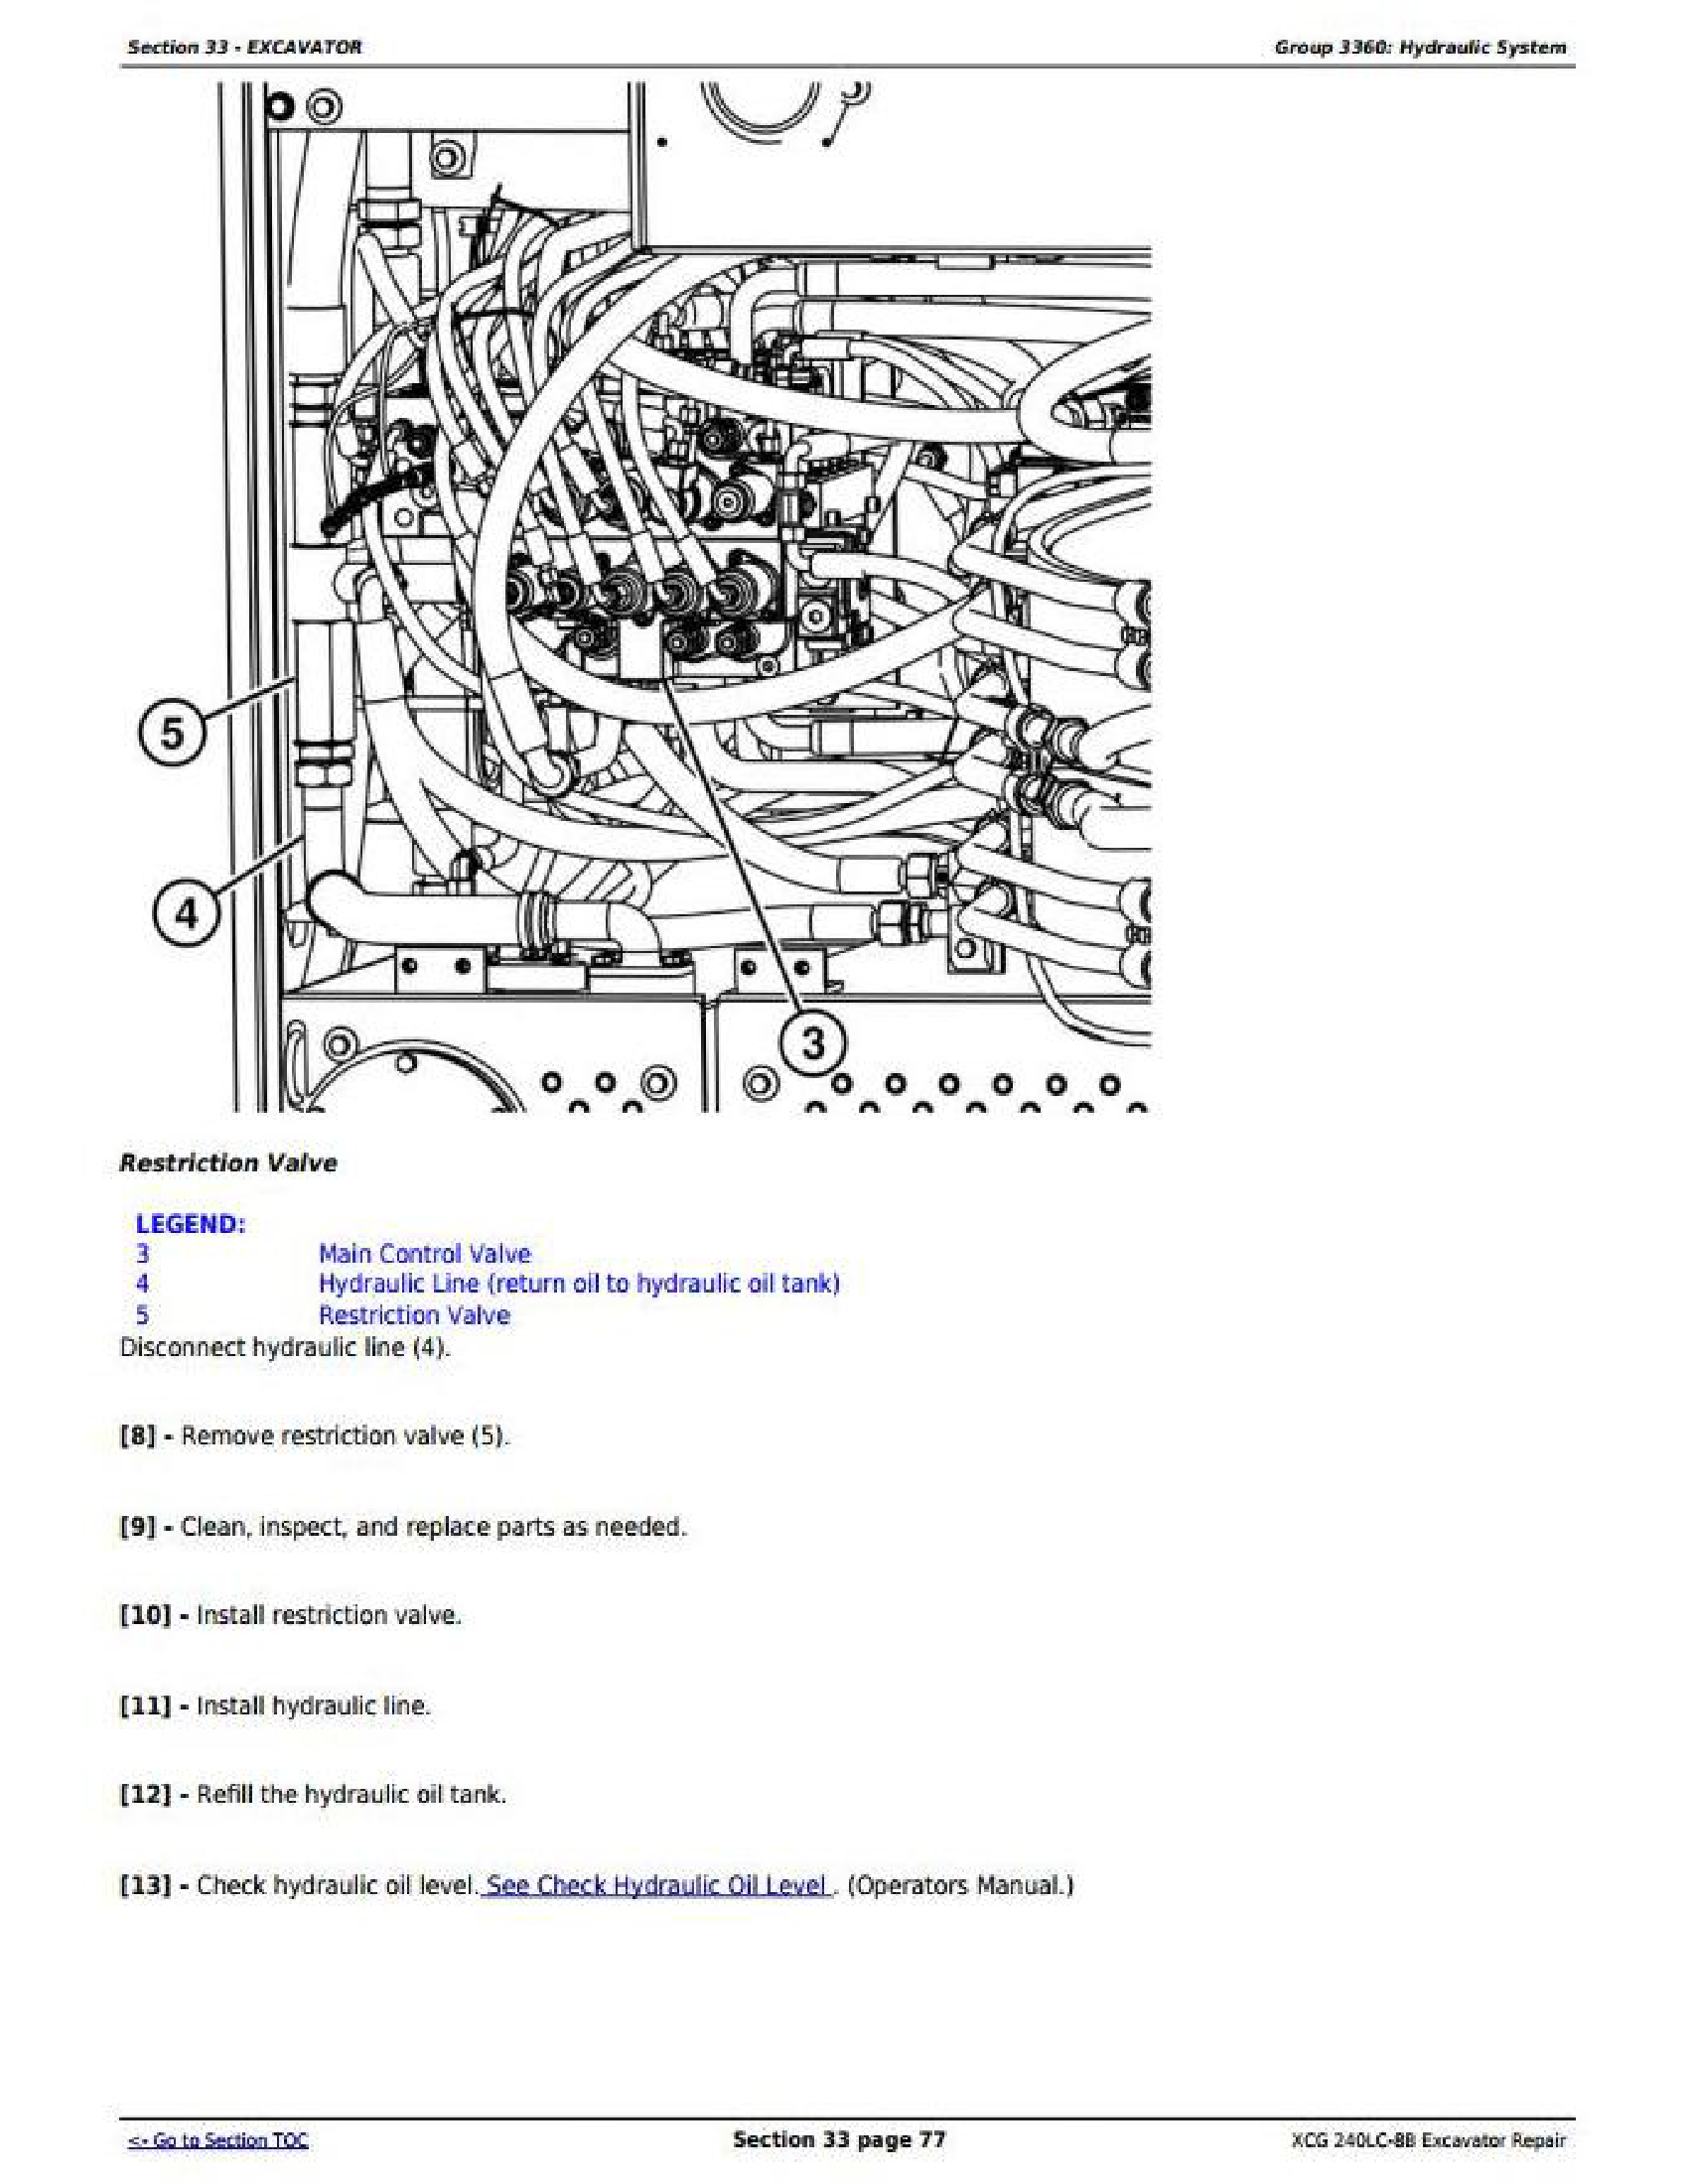 John Deere 759J manual pdf